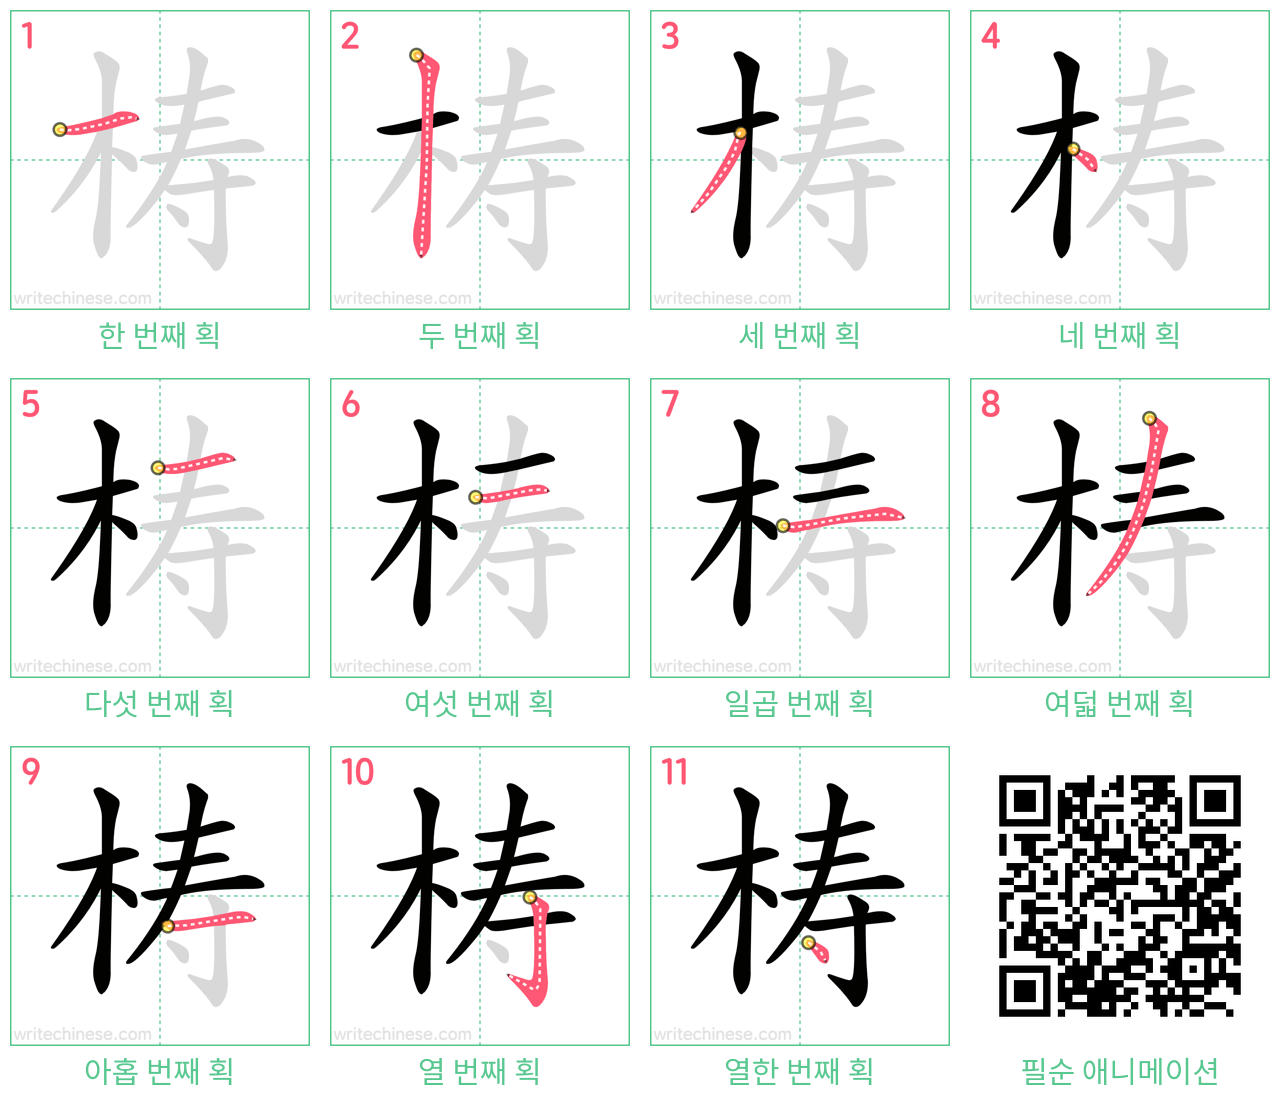 梼 step-by-step stroke order diagrams